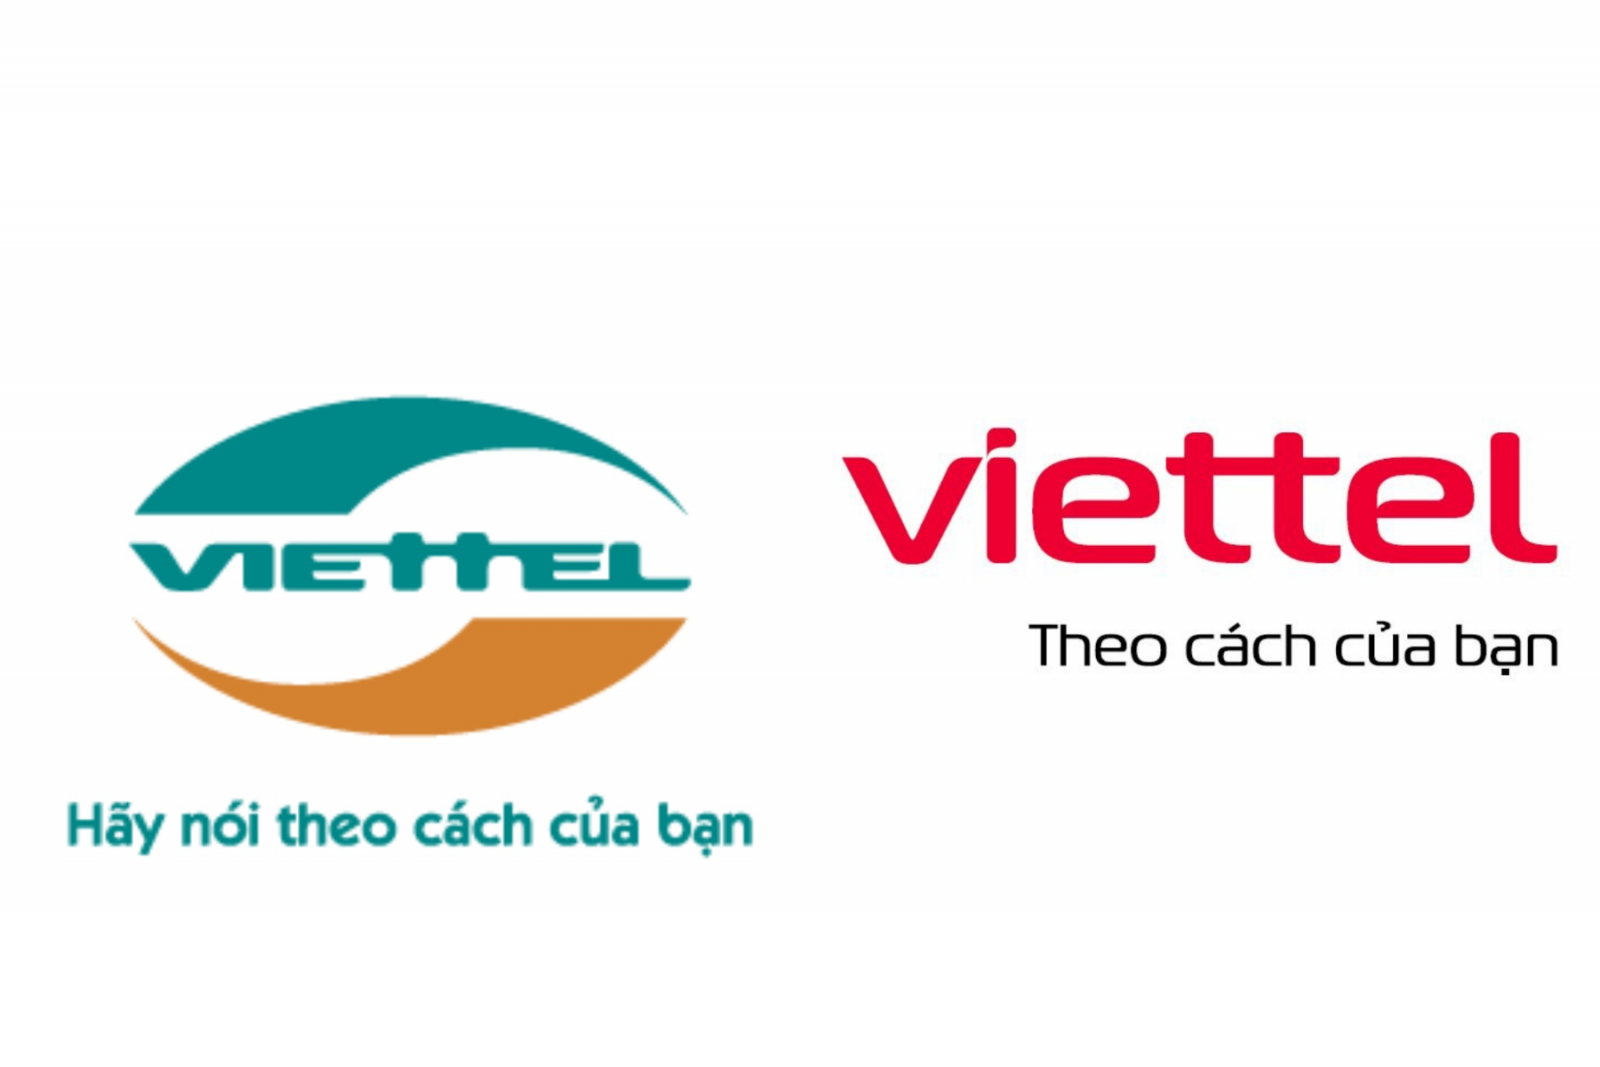 Viettel công bố nhận diện thương hiệu mới